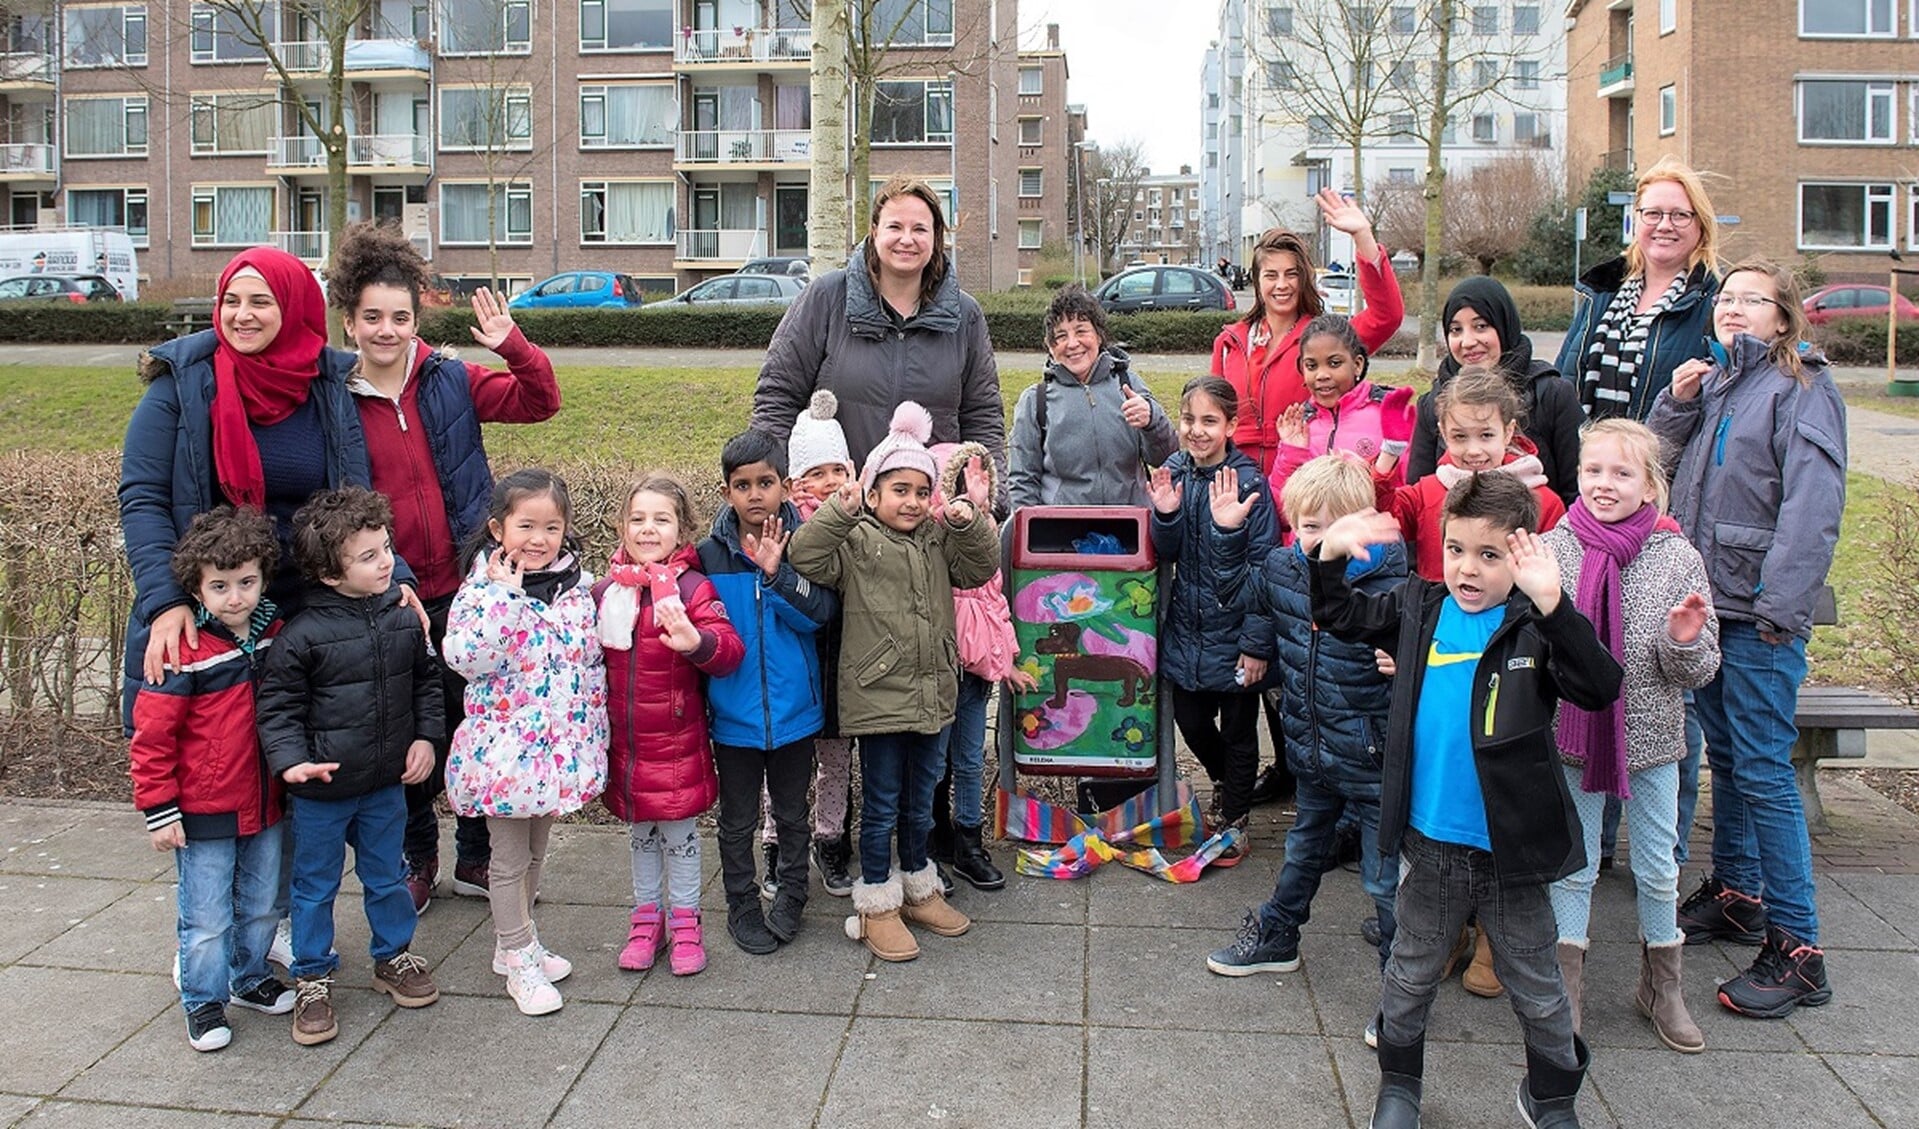 Wethouder Nadine Stemerdink met de kinderen uit Bovenveen die de ontwerpen voor de prullenbakken maakten. (foto: Michel Groen)